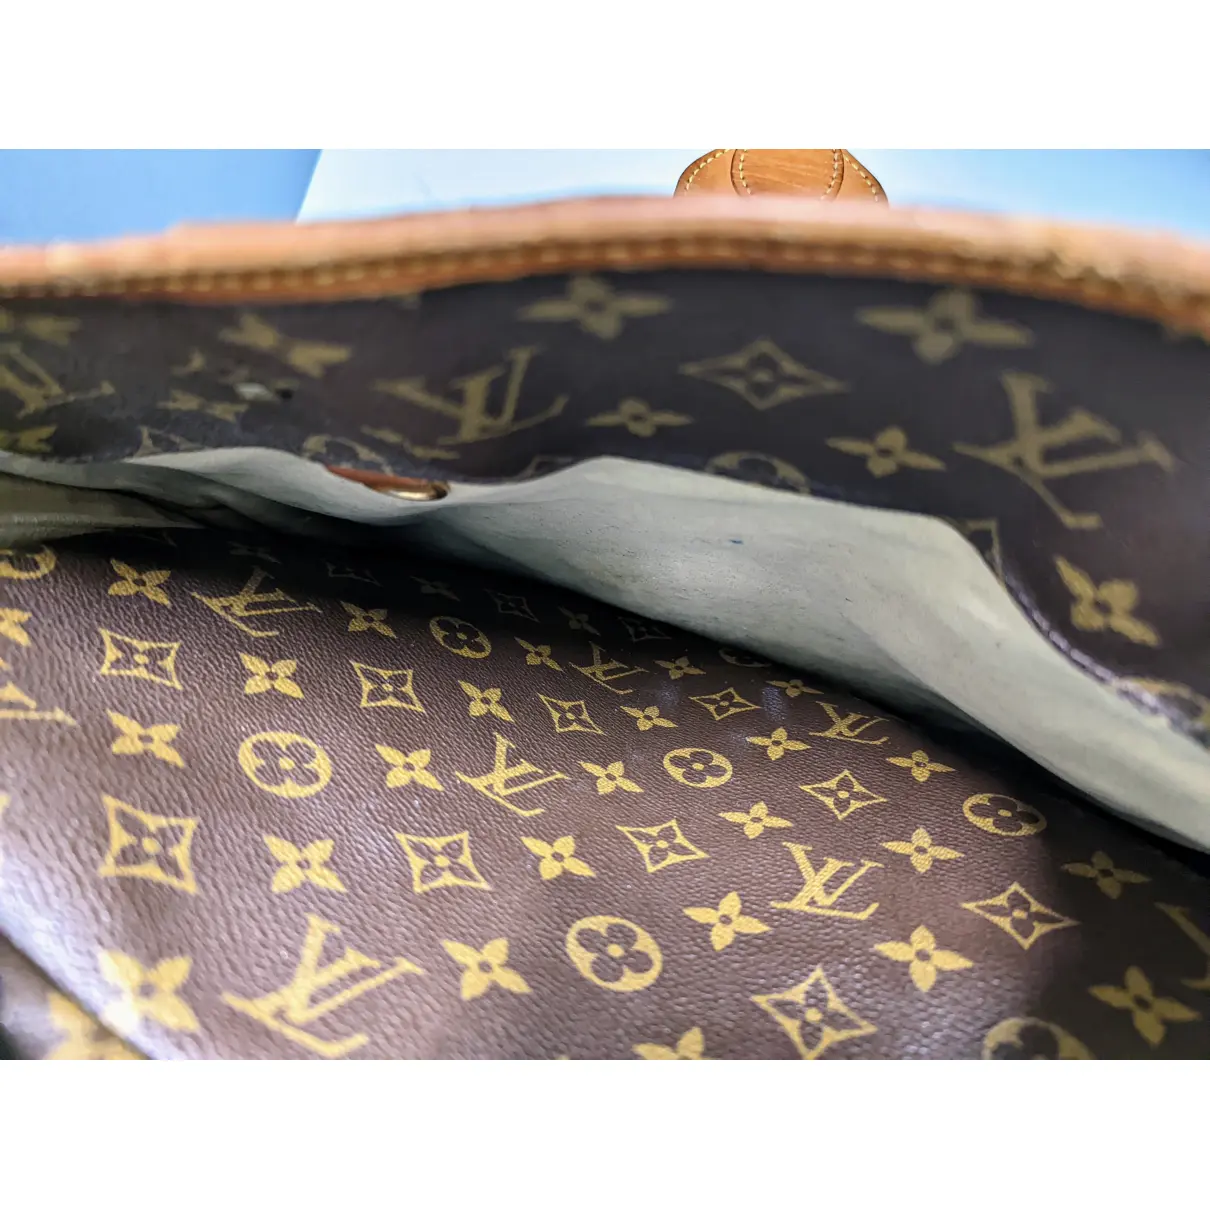 Rivoli leather handbag Louis Vuitton